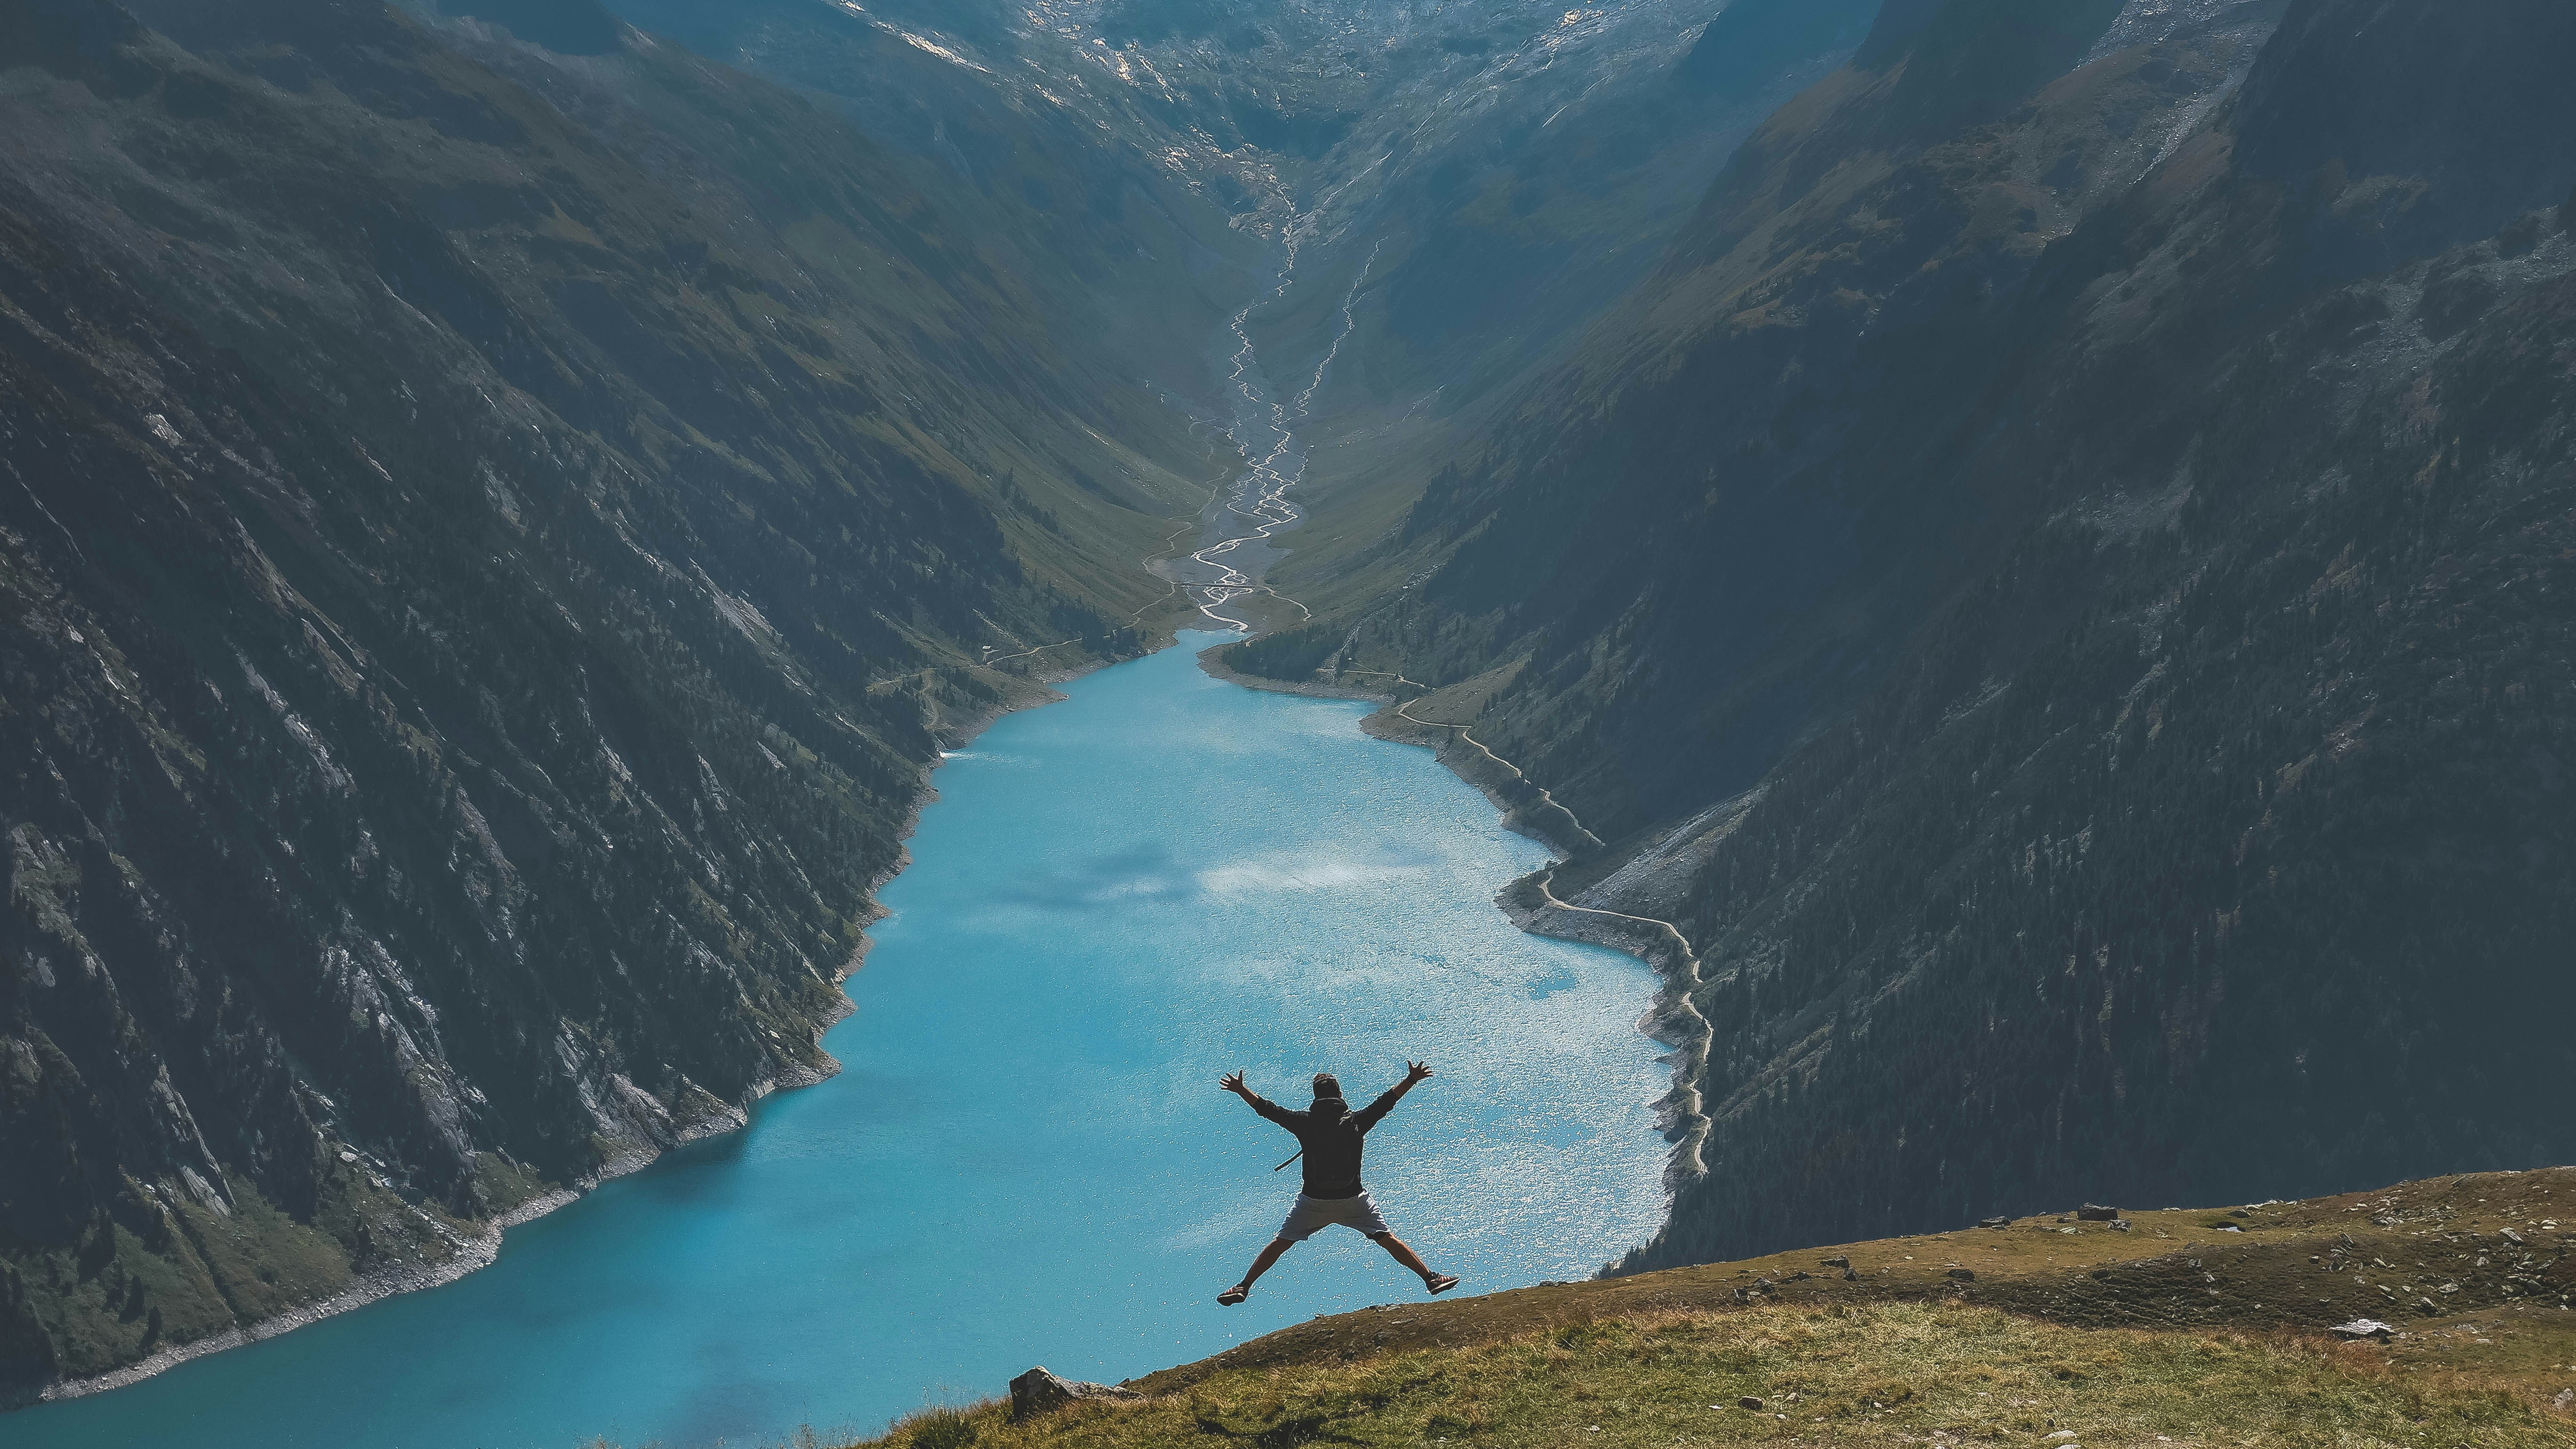 Un homme fait un saut de joie devant un lac au coeur des montages, la photo est prise de loin pour montrer le paysage